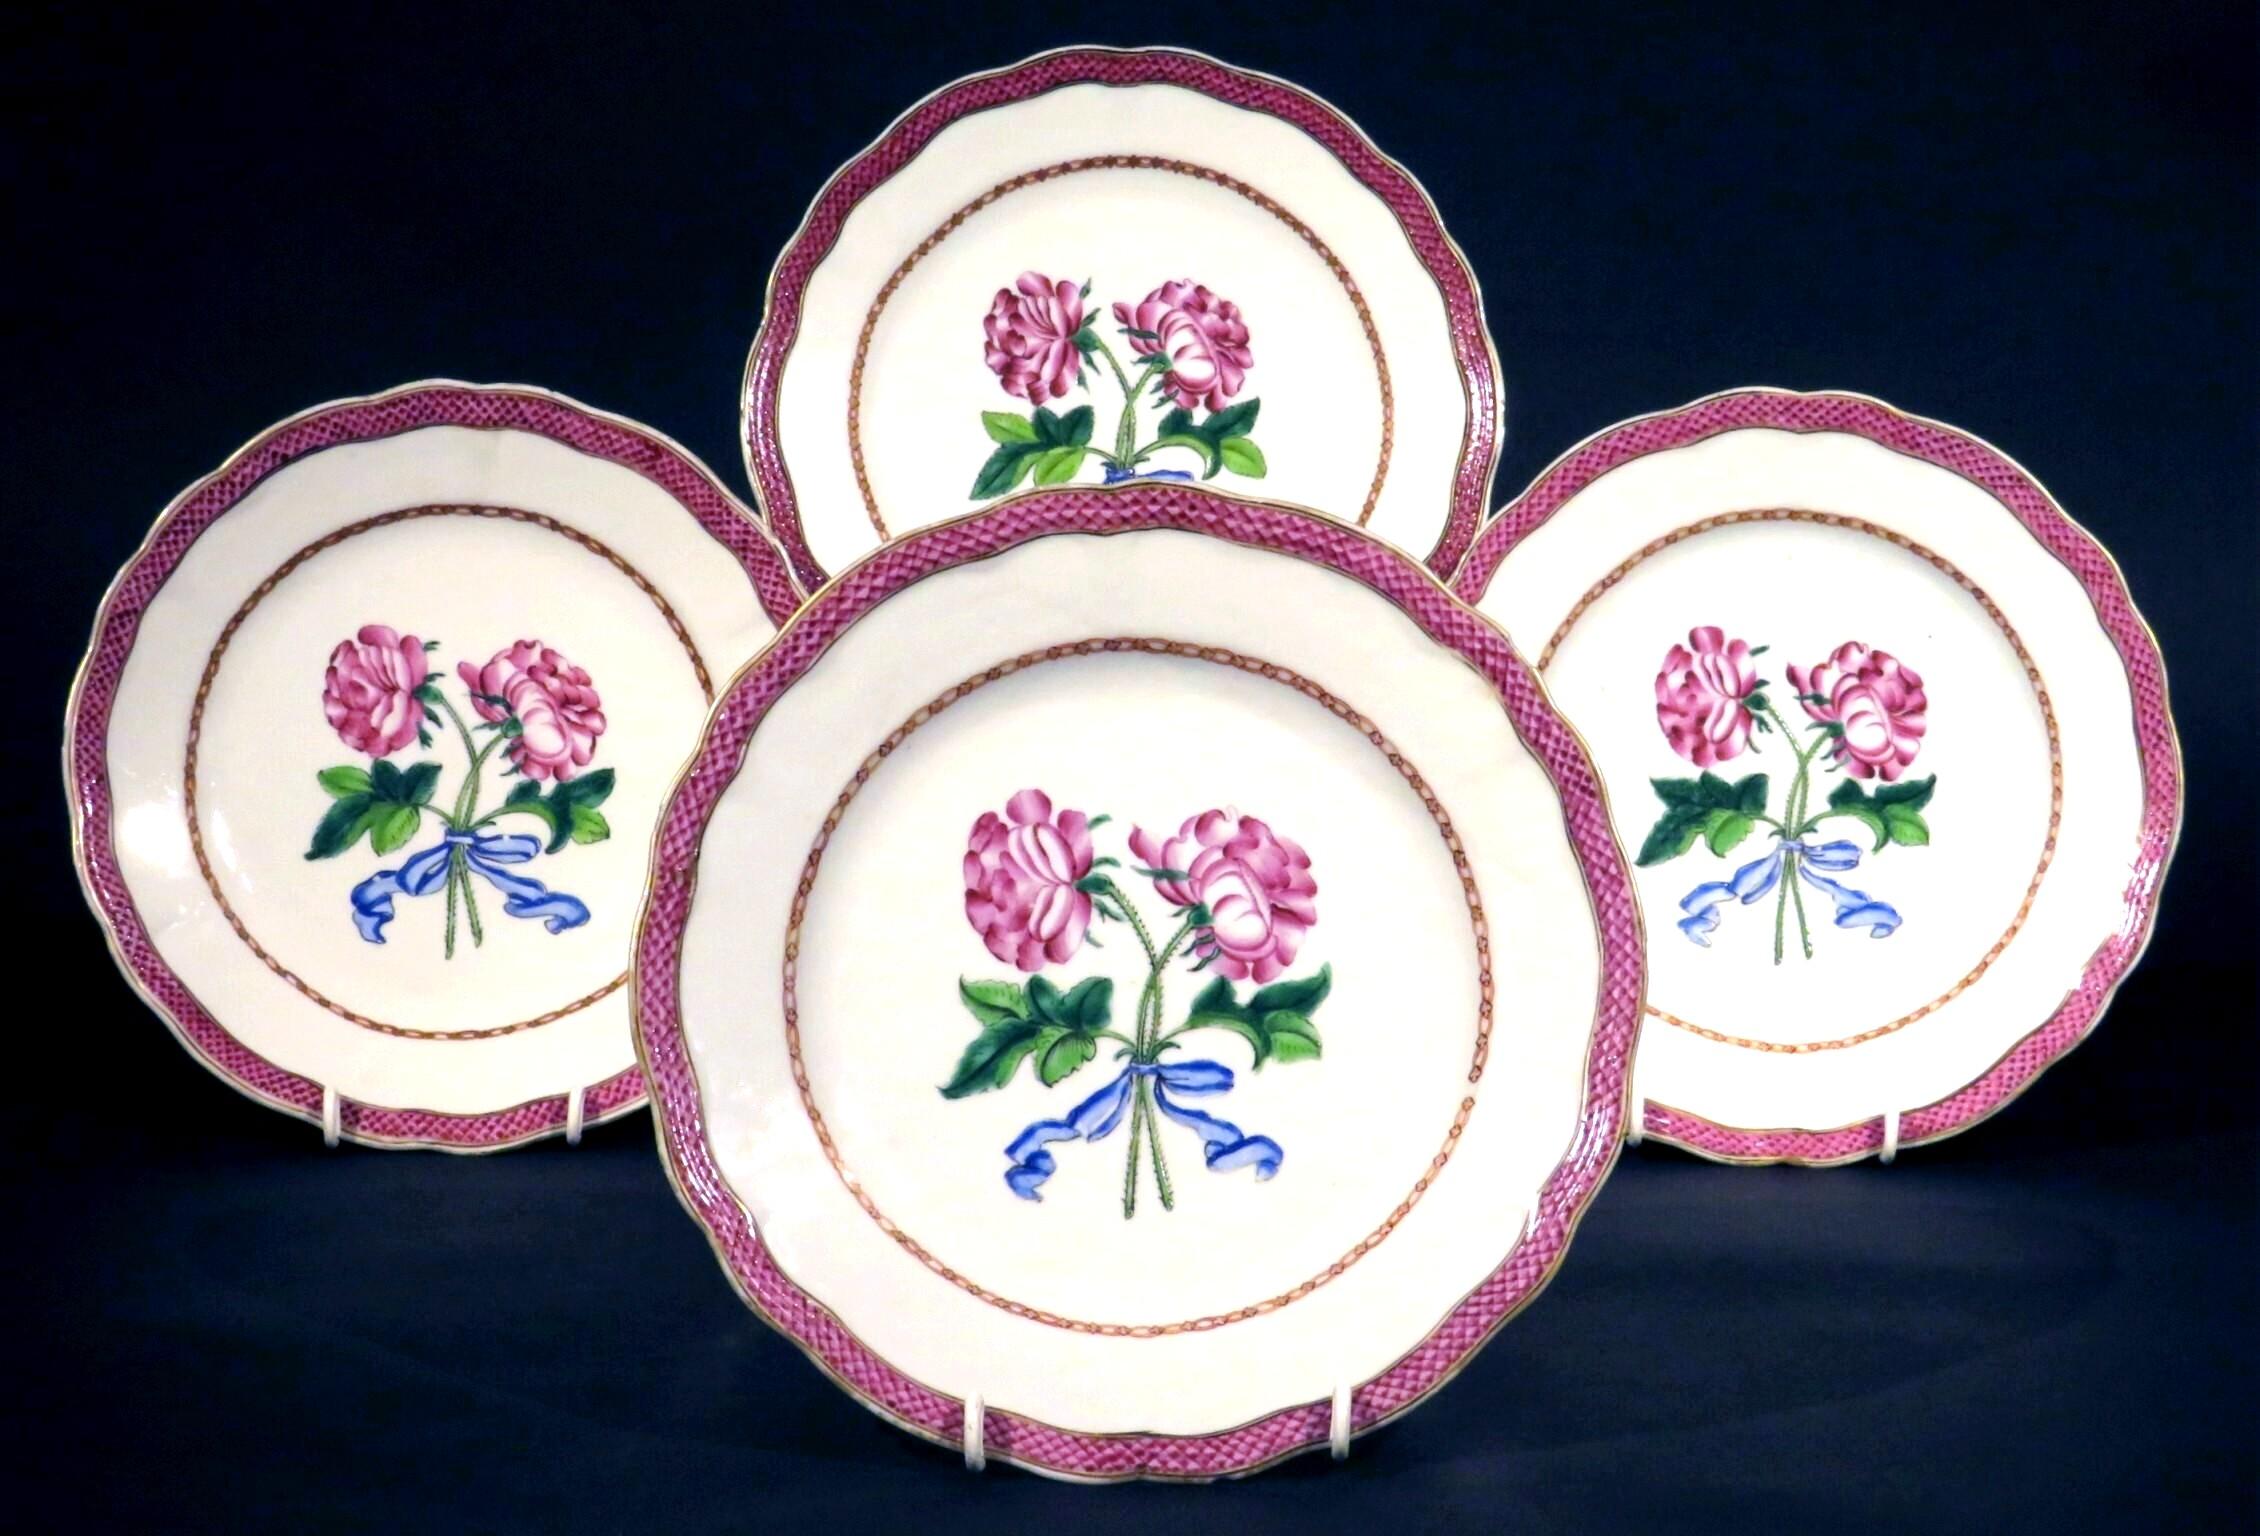 Un très beau groupe de quatre assiettes botaniques en porcelaine d'exportation chinoise du XVIIIe siècle, apparemment fabriquées pour le marché français, vers 1775.
Chaque assiette présente un bord festonné bordé de motifs de couches émaillés, le